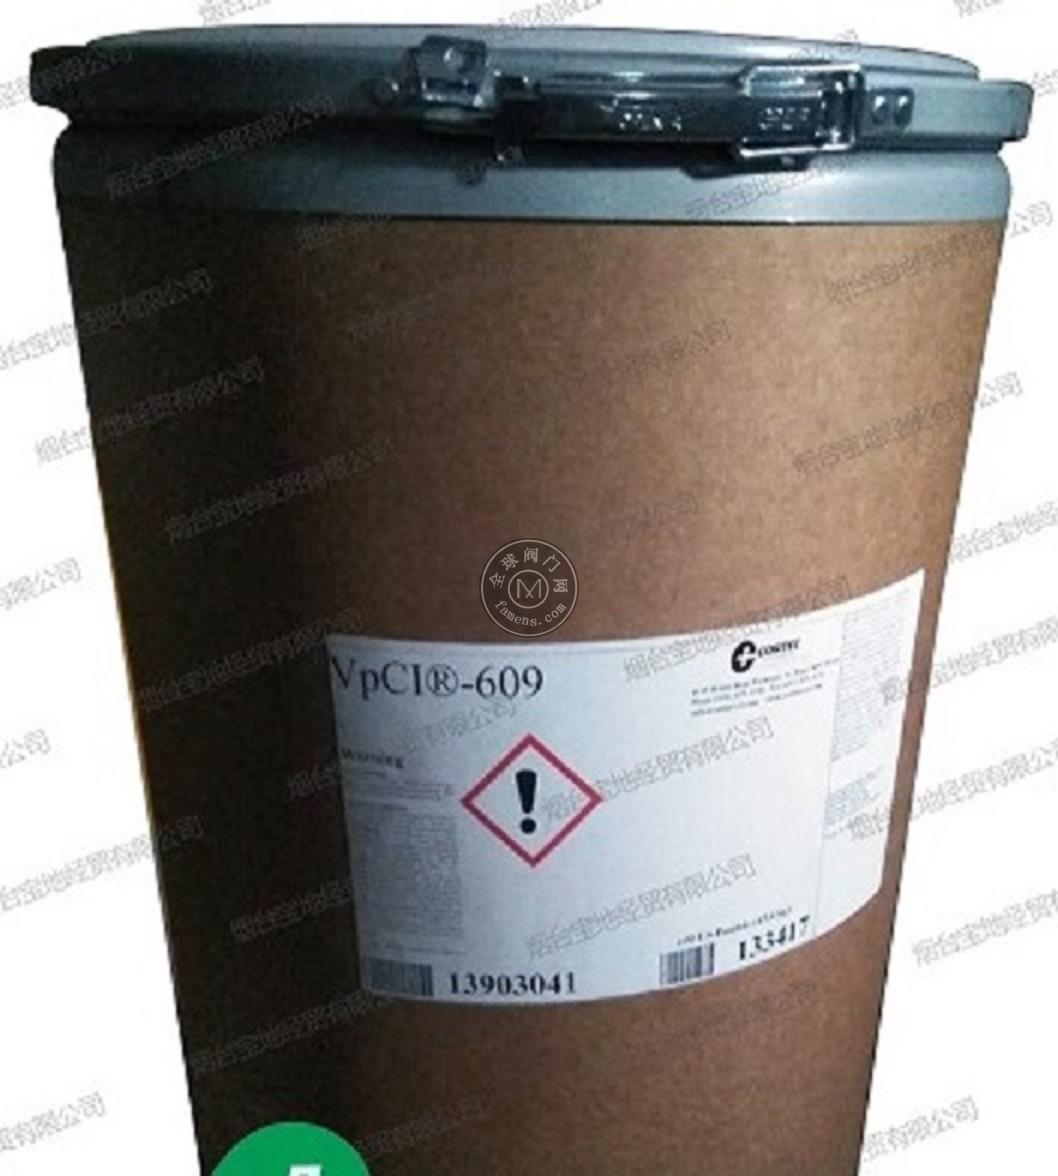 煙臺寶地經貿VpCI-609,美國CORTEC,防銹粉末